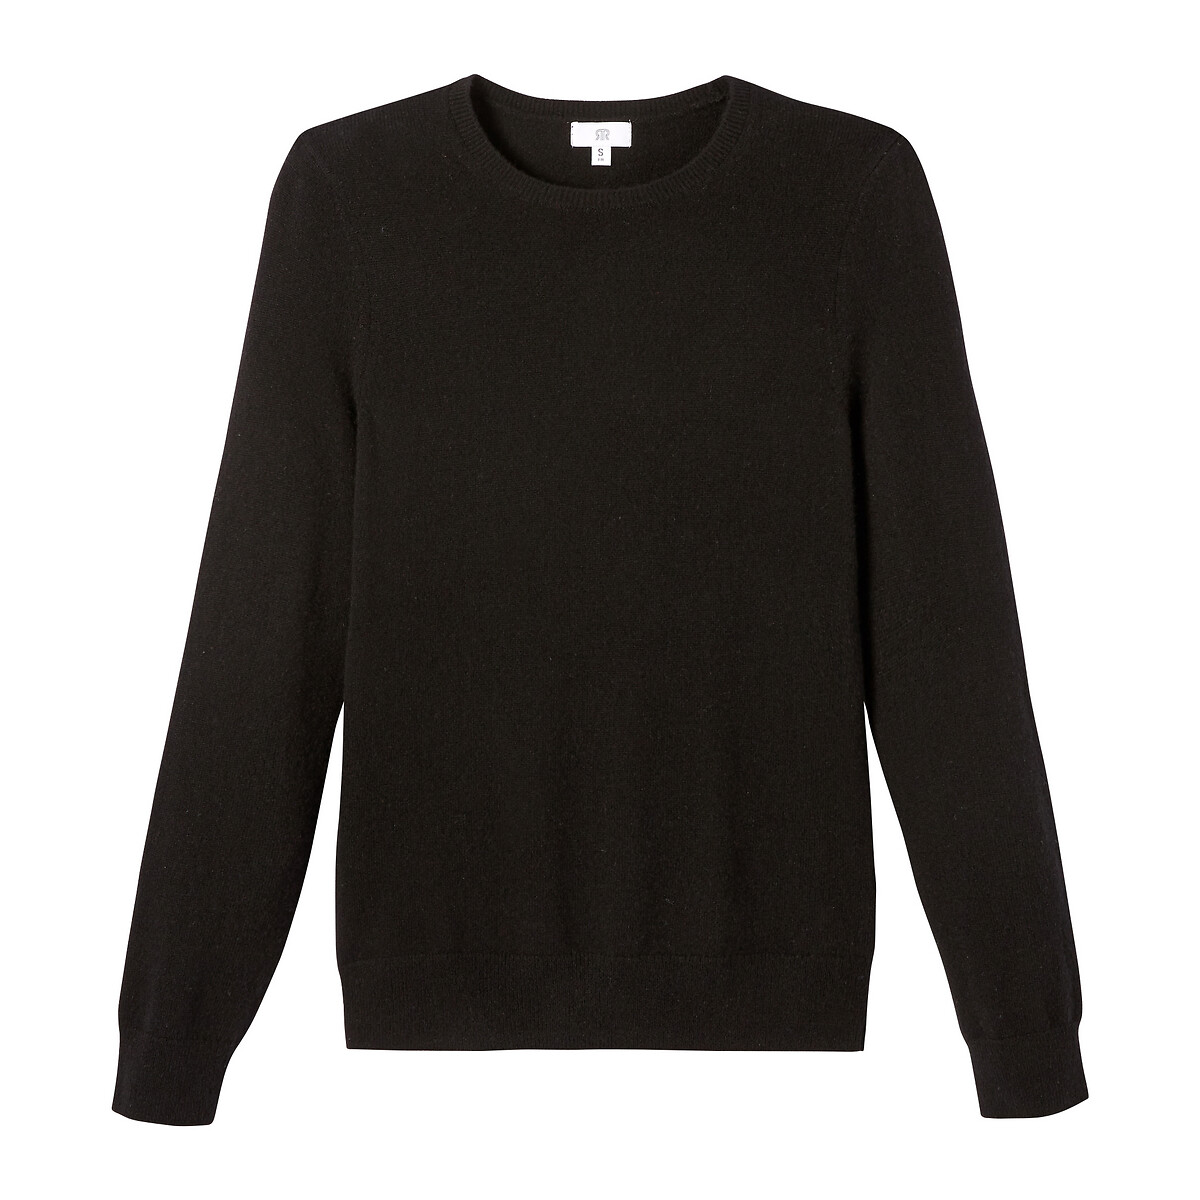 Пуловер La Redoute С круглым вырезом из тонкого трикотажа 100 кашемир XXL черный, размер XXL - фото 5